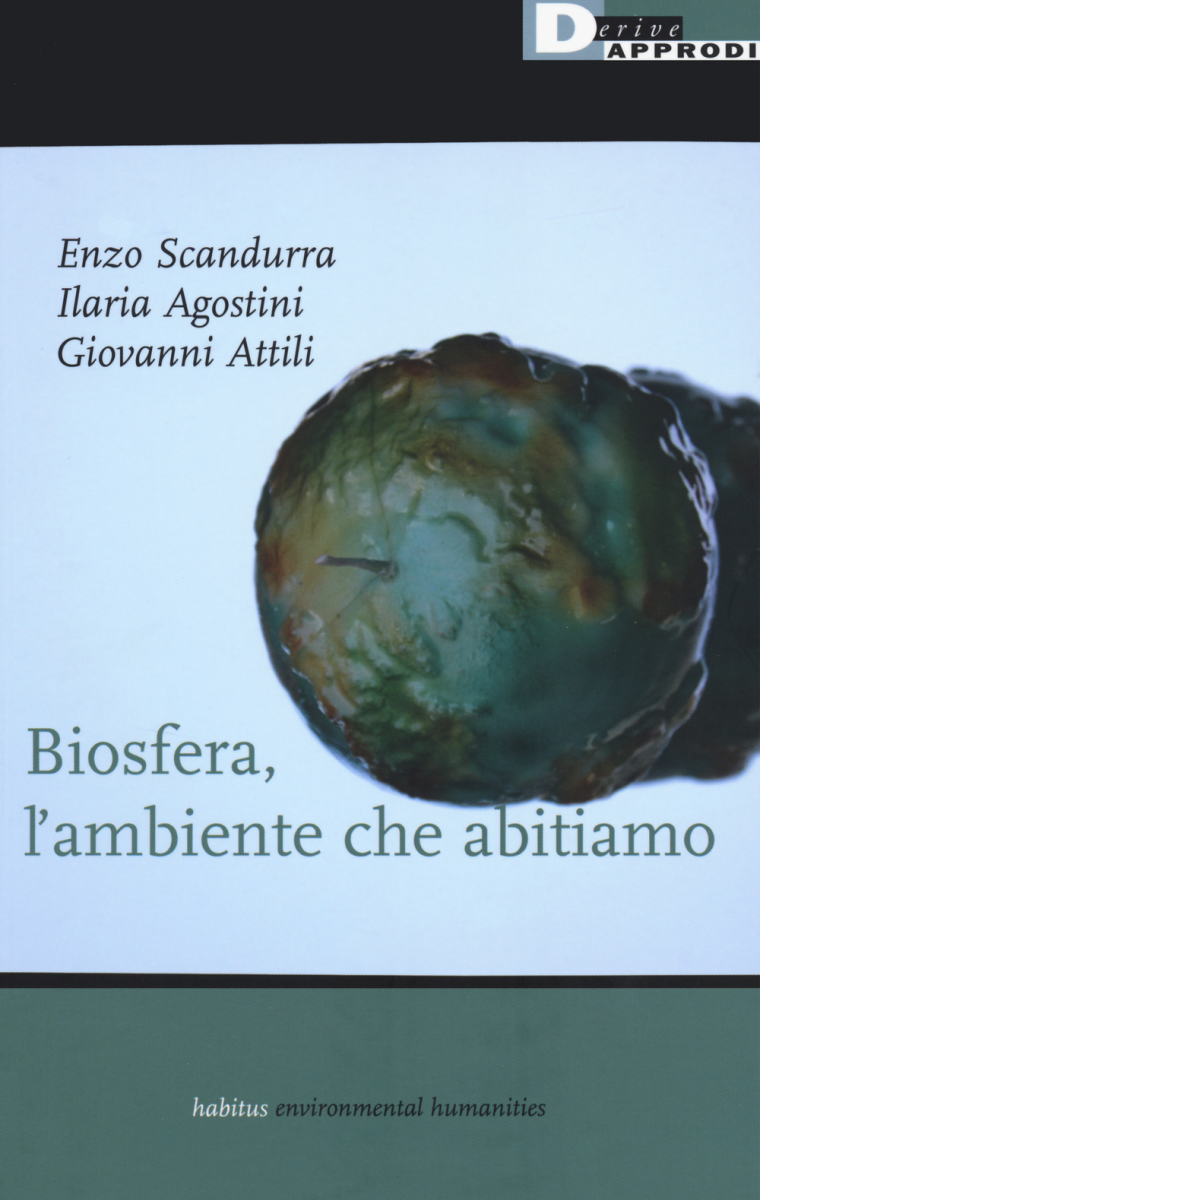 Biosfera, l'ambiente che abitiamo - Enzo Scandurra, Ilaria Agostini - 2020